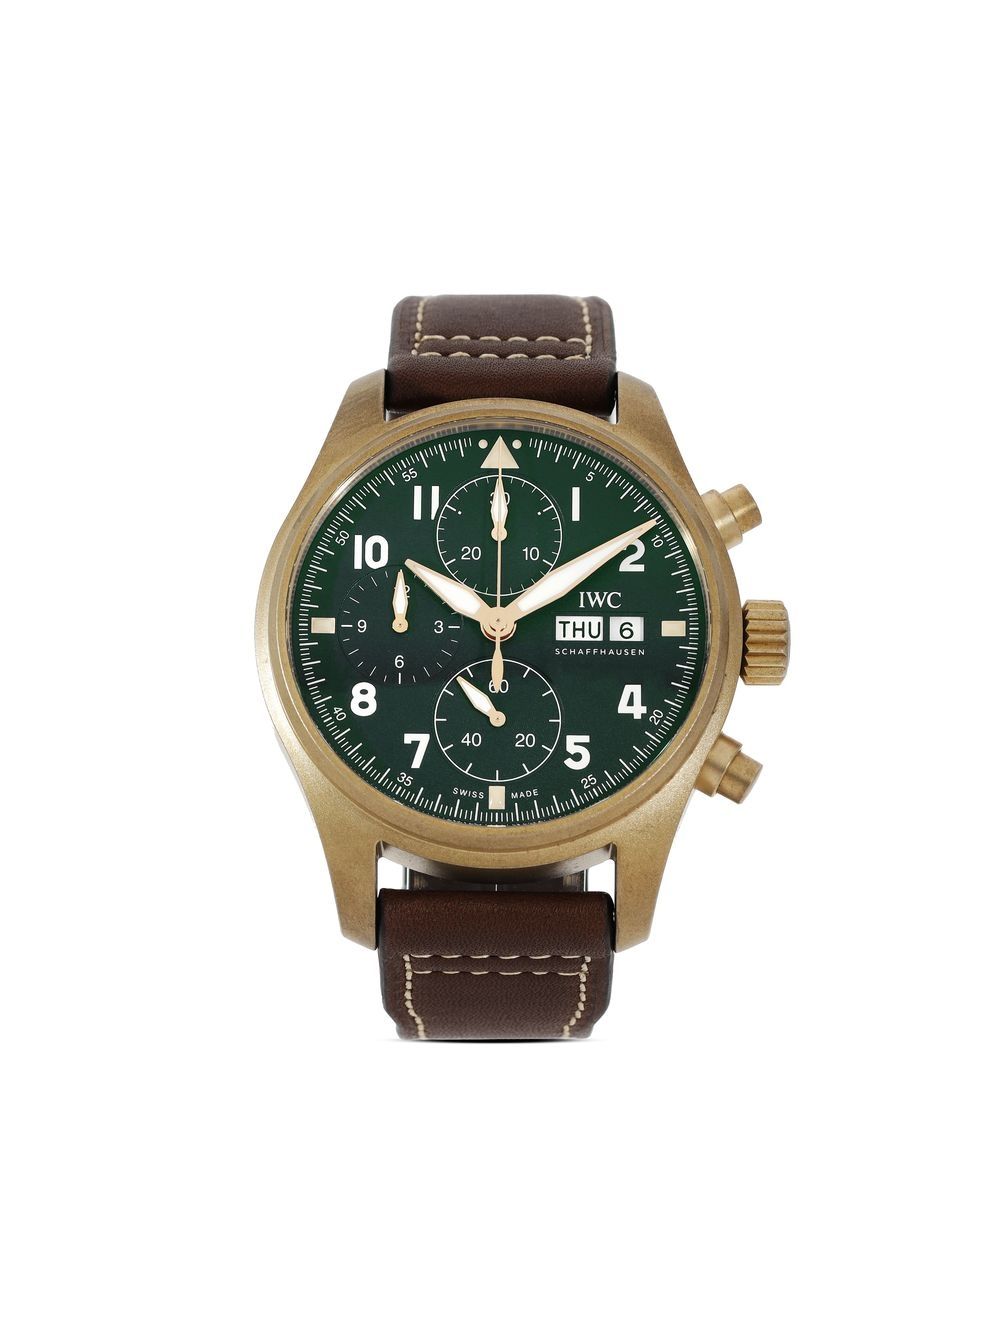 IWC Schaffhausen 2022 unworn Pilot's Watch Chronograph Spitfire "SIHH 2019" 41mm - Green von IWC Schaffhausen